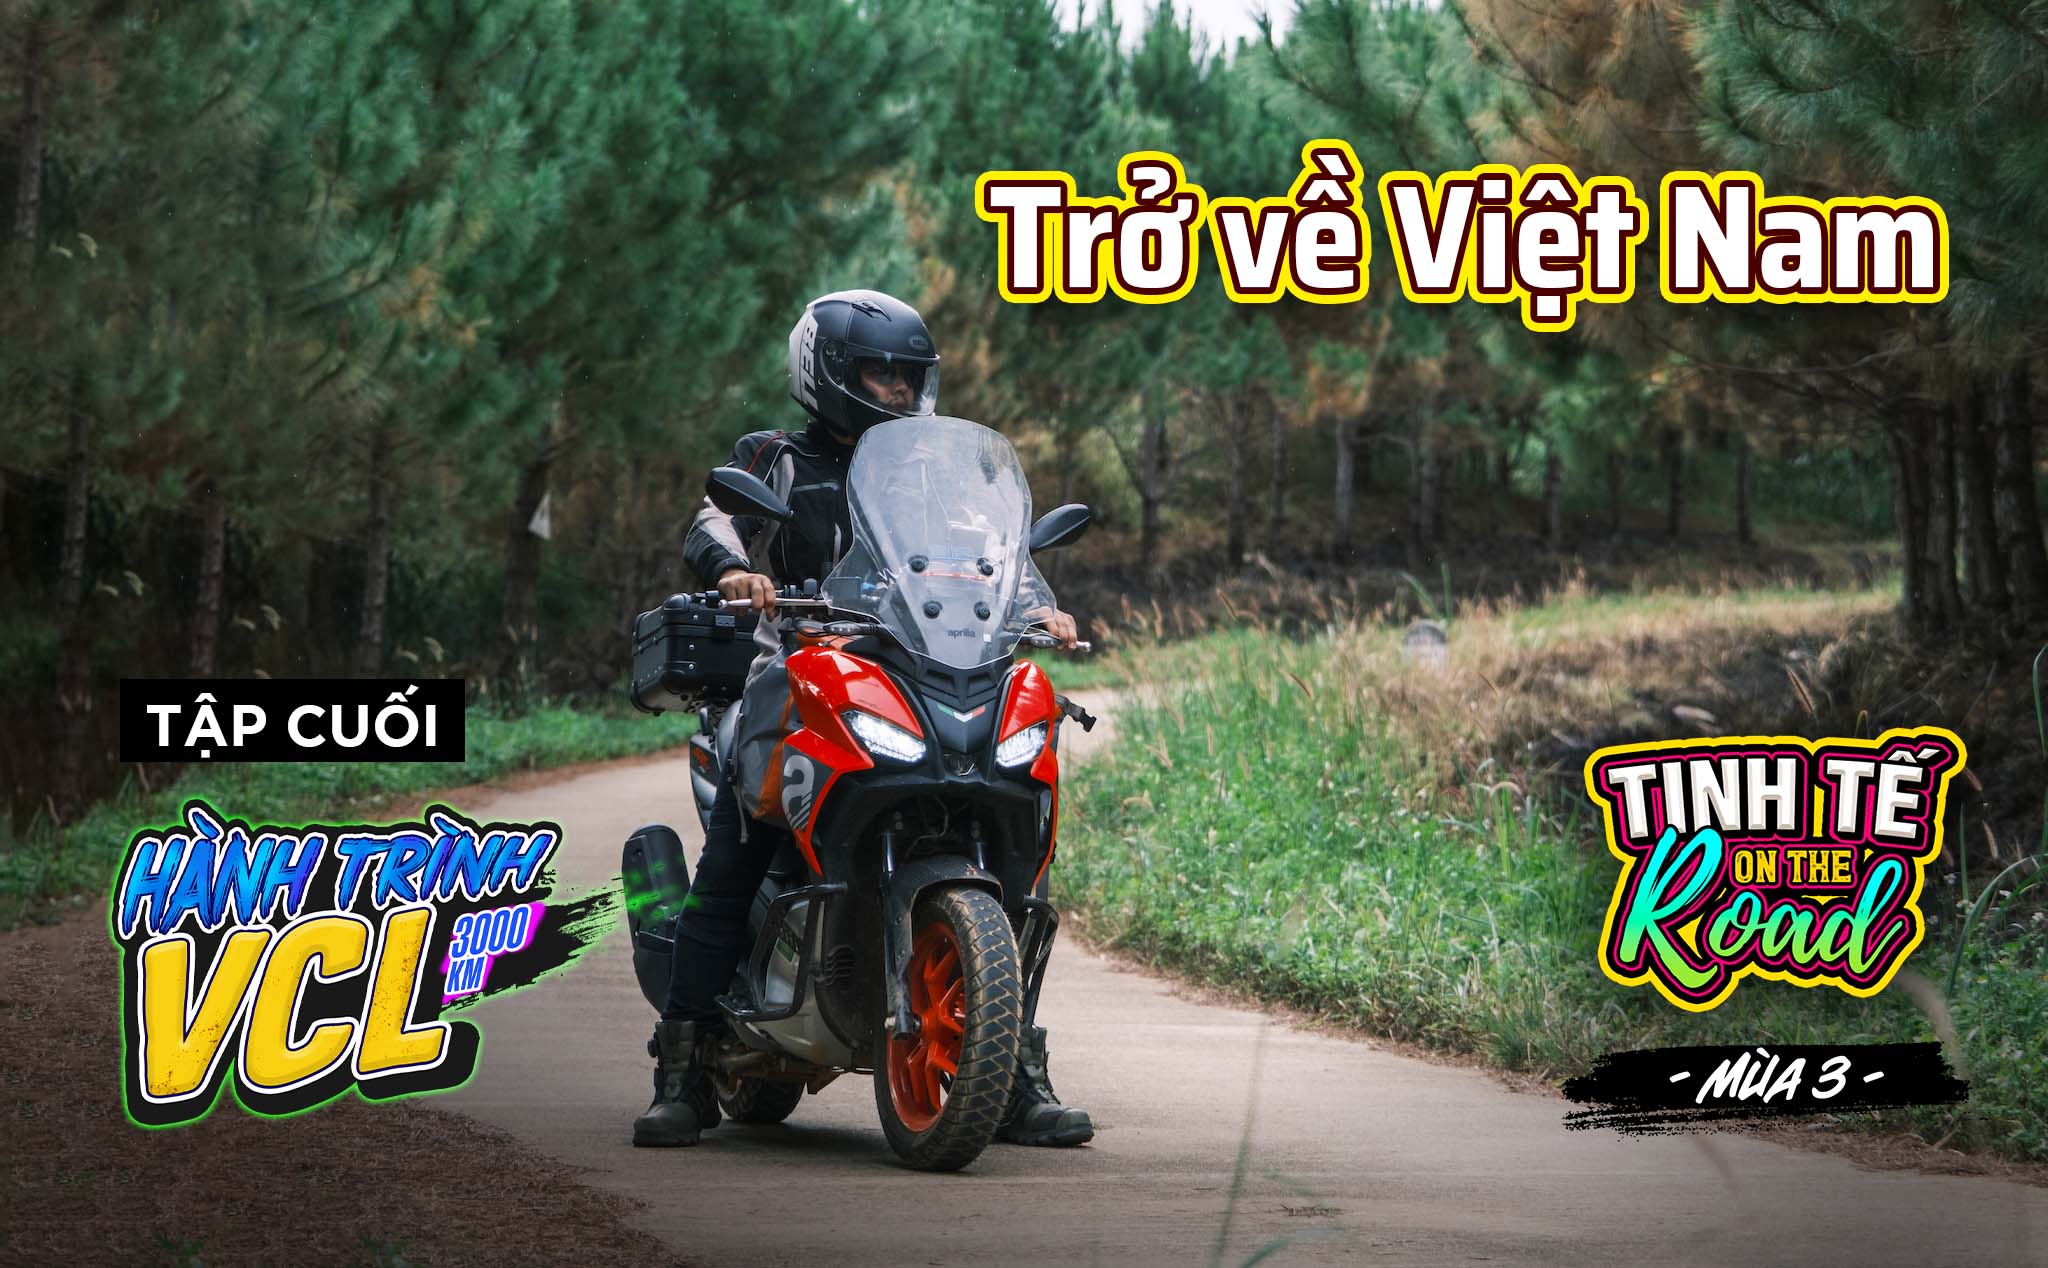 Trở về Việt Nam sau 3000km, khép lại Tinh tế on the Road mùa 3 với nhiều kỉ niệm đẹp